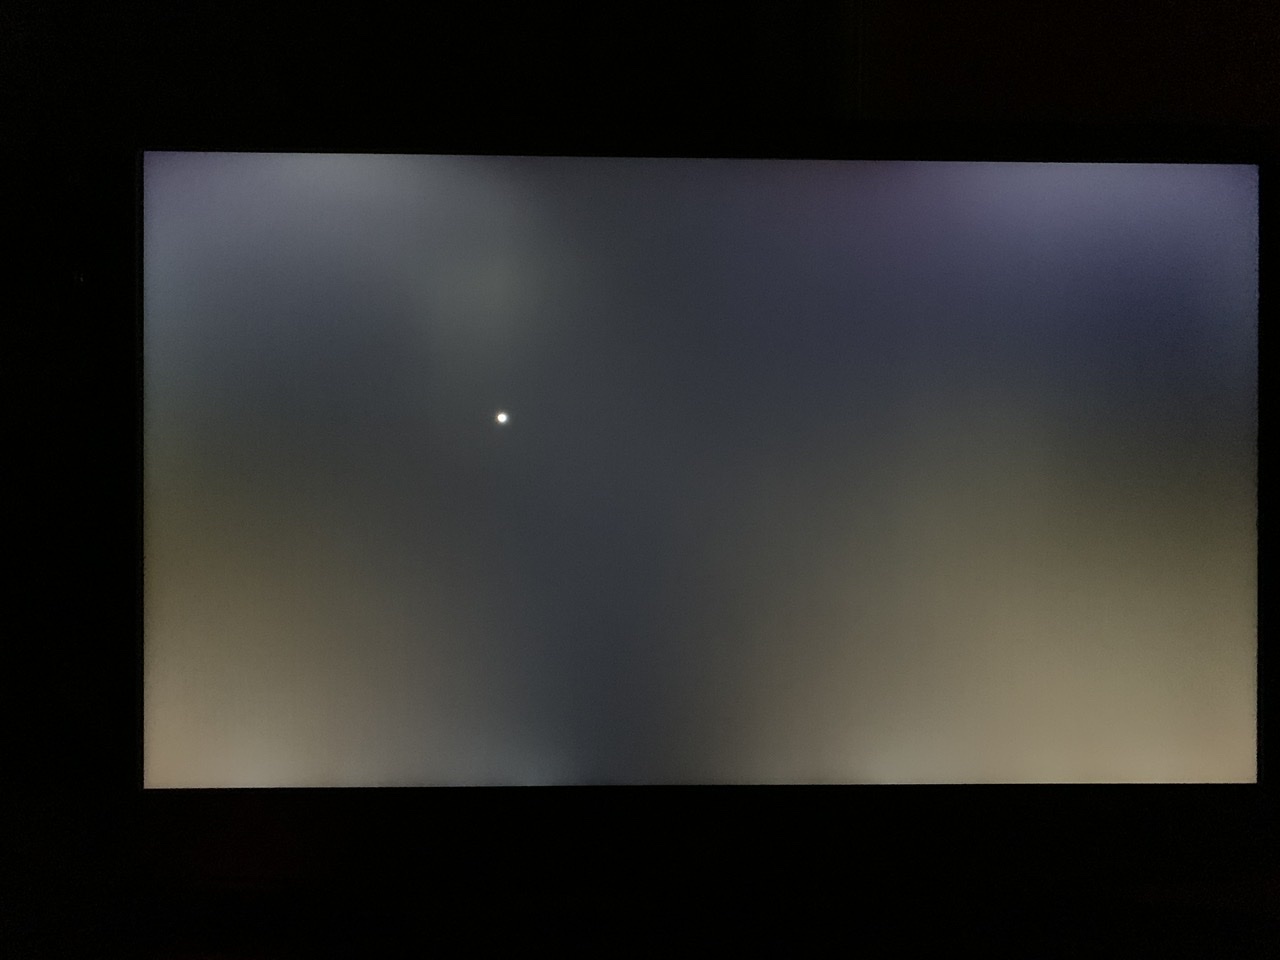 Fuga de luz exagerada en pantalla - Comunidad de Soporte HP - 1100704